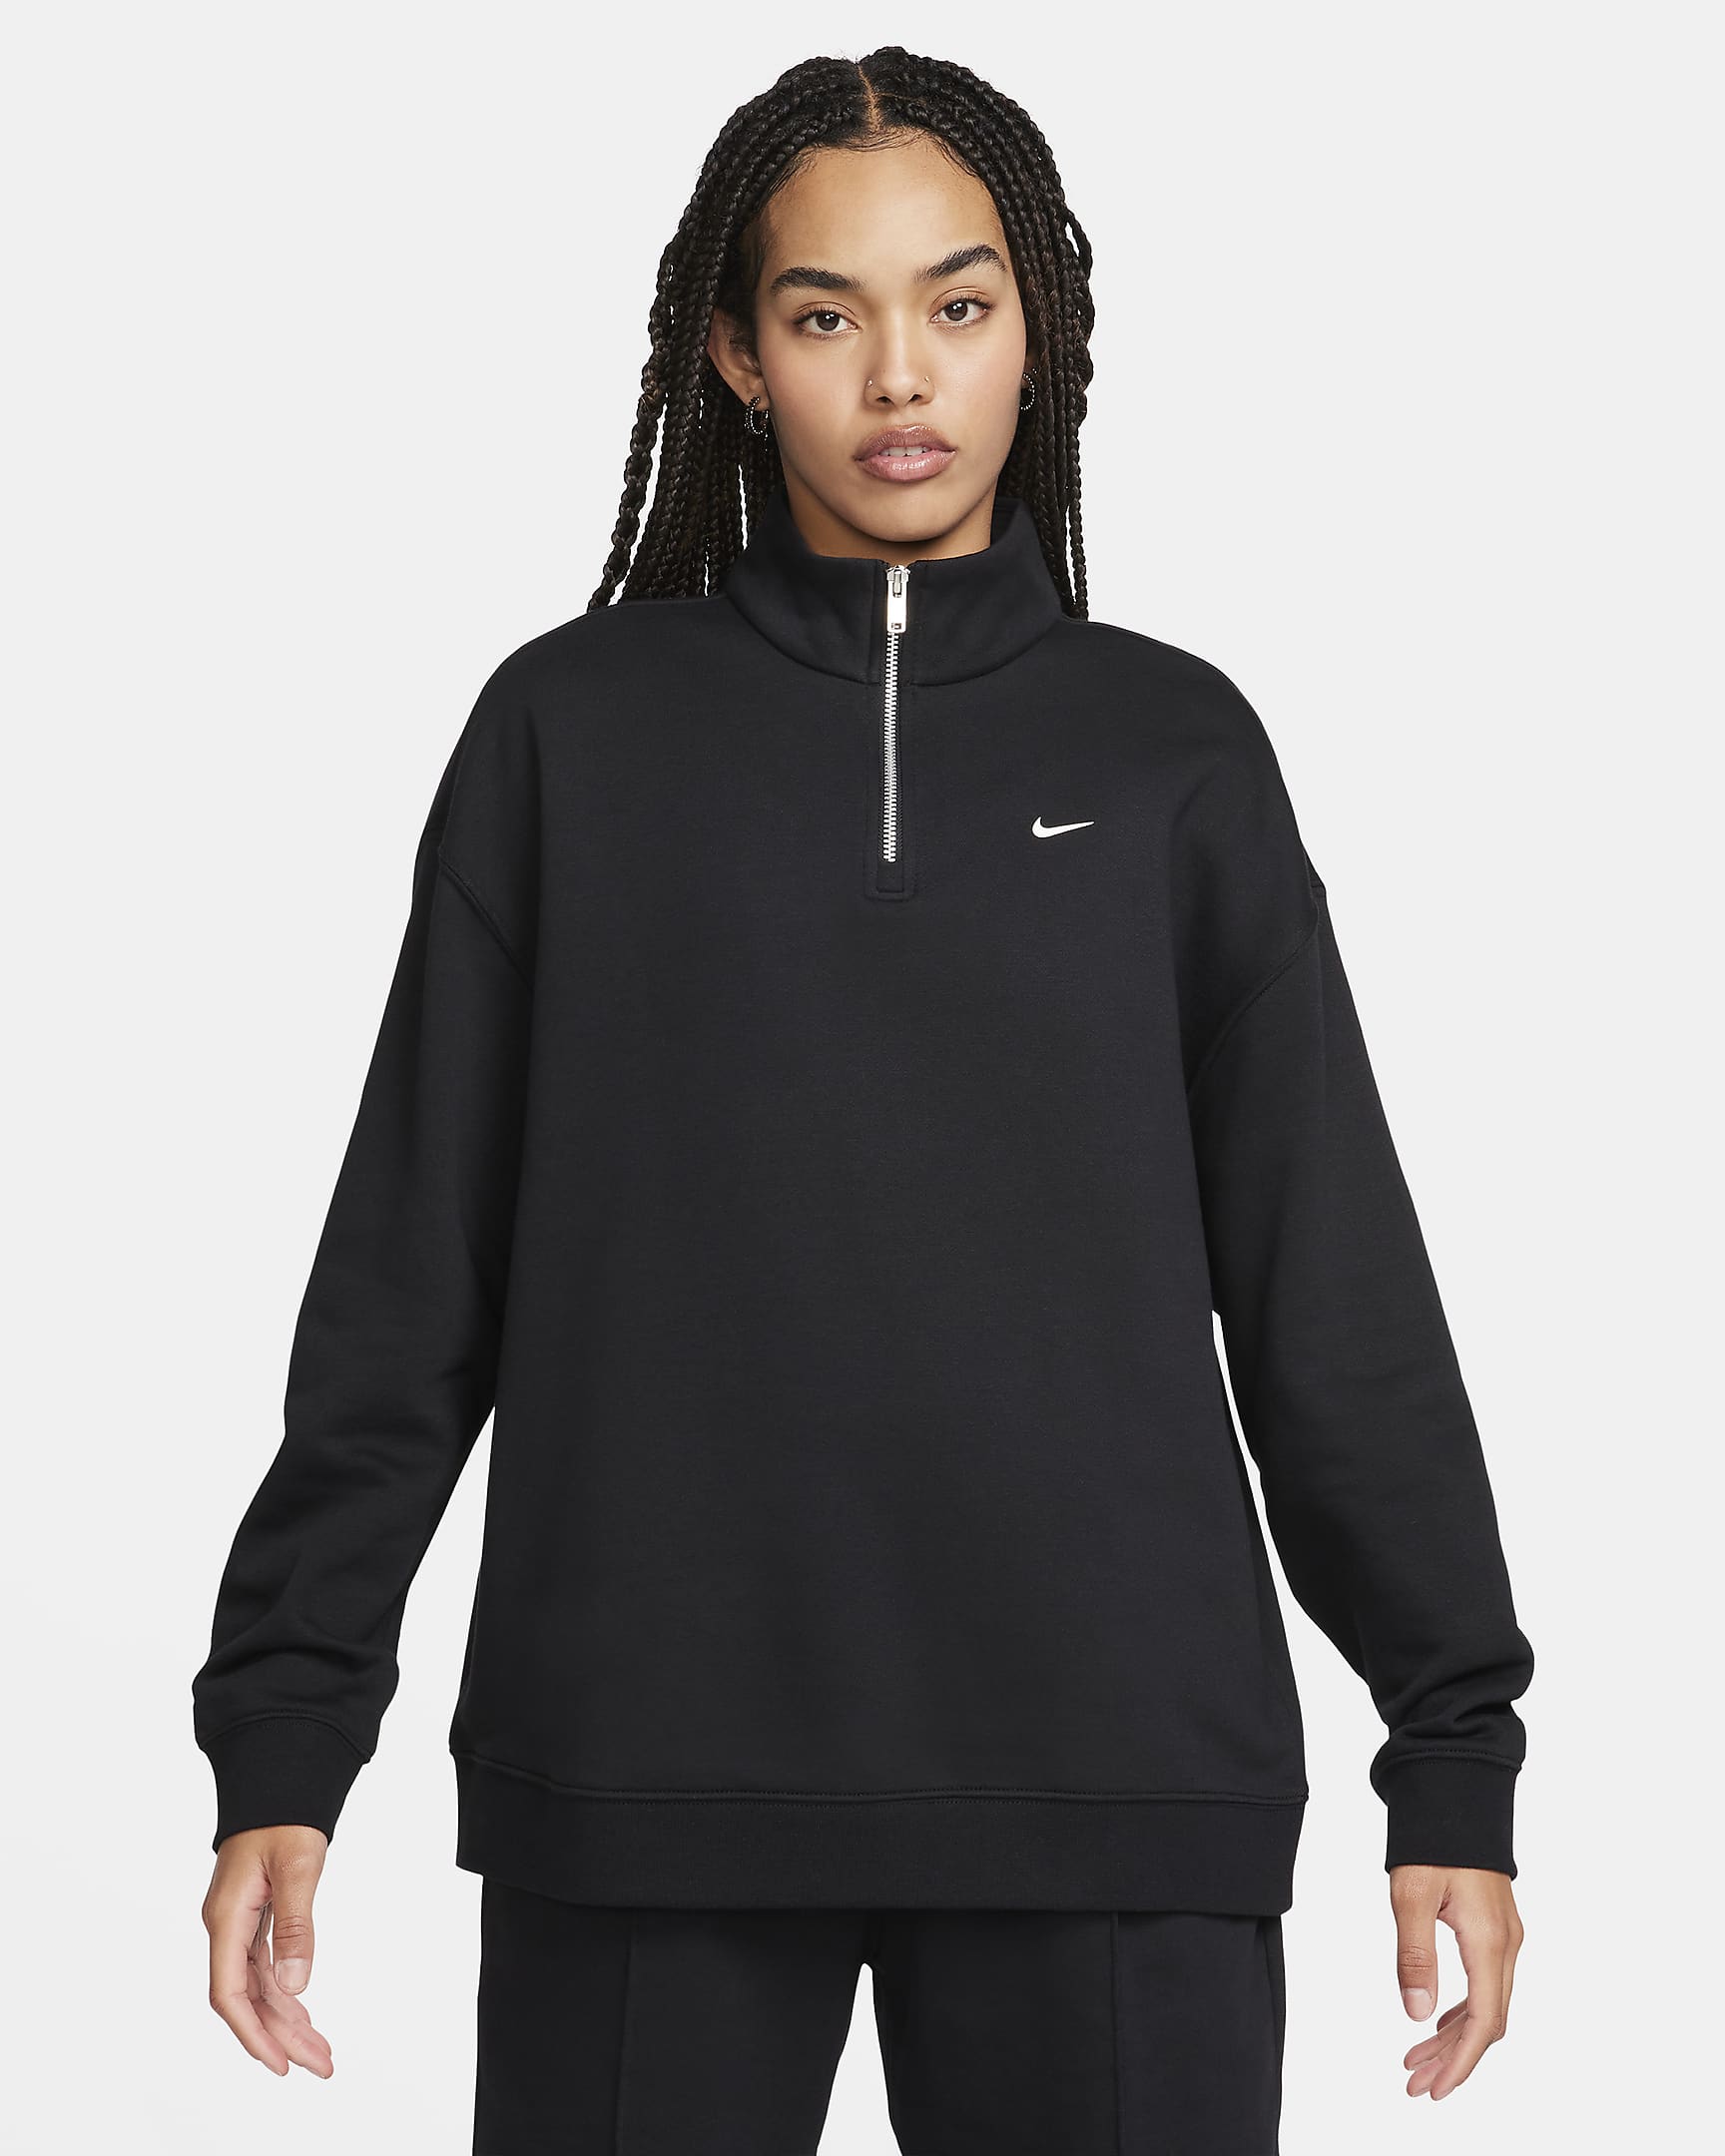 Nike Sportswear Women's Oversized 1/4-Zip Fleece Top - Black/Sail